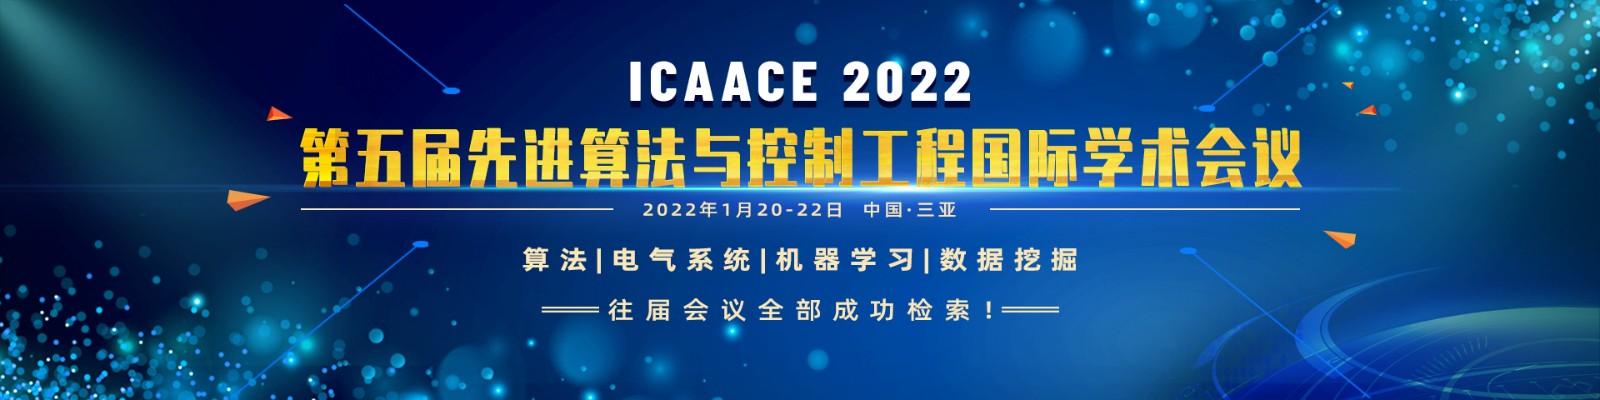 1月哈尔滨ICAACE2022-banner中-何霞丽-20210604.jpg